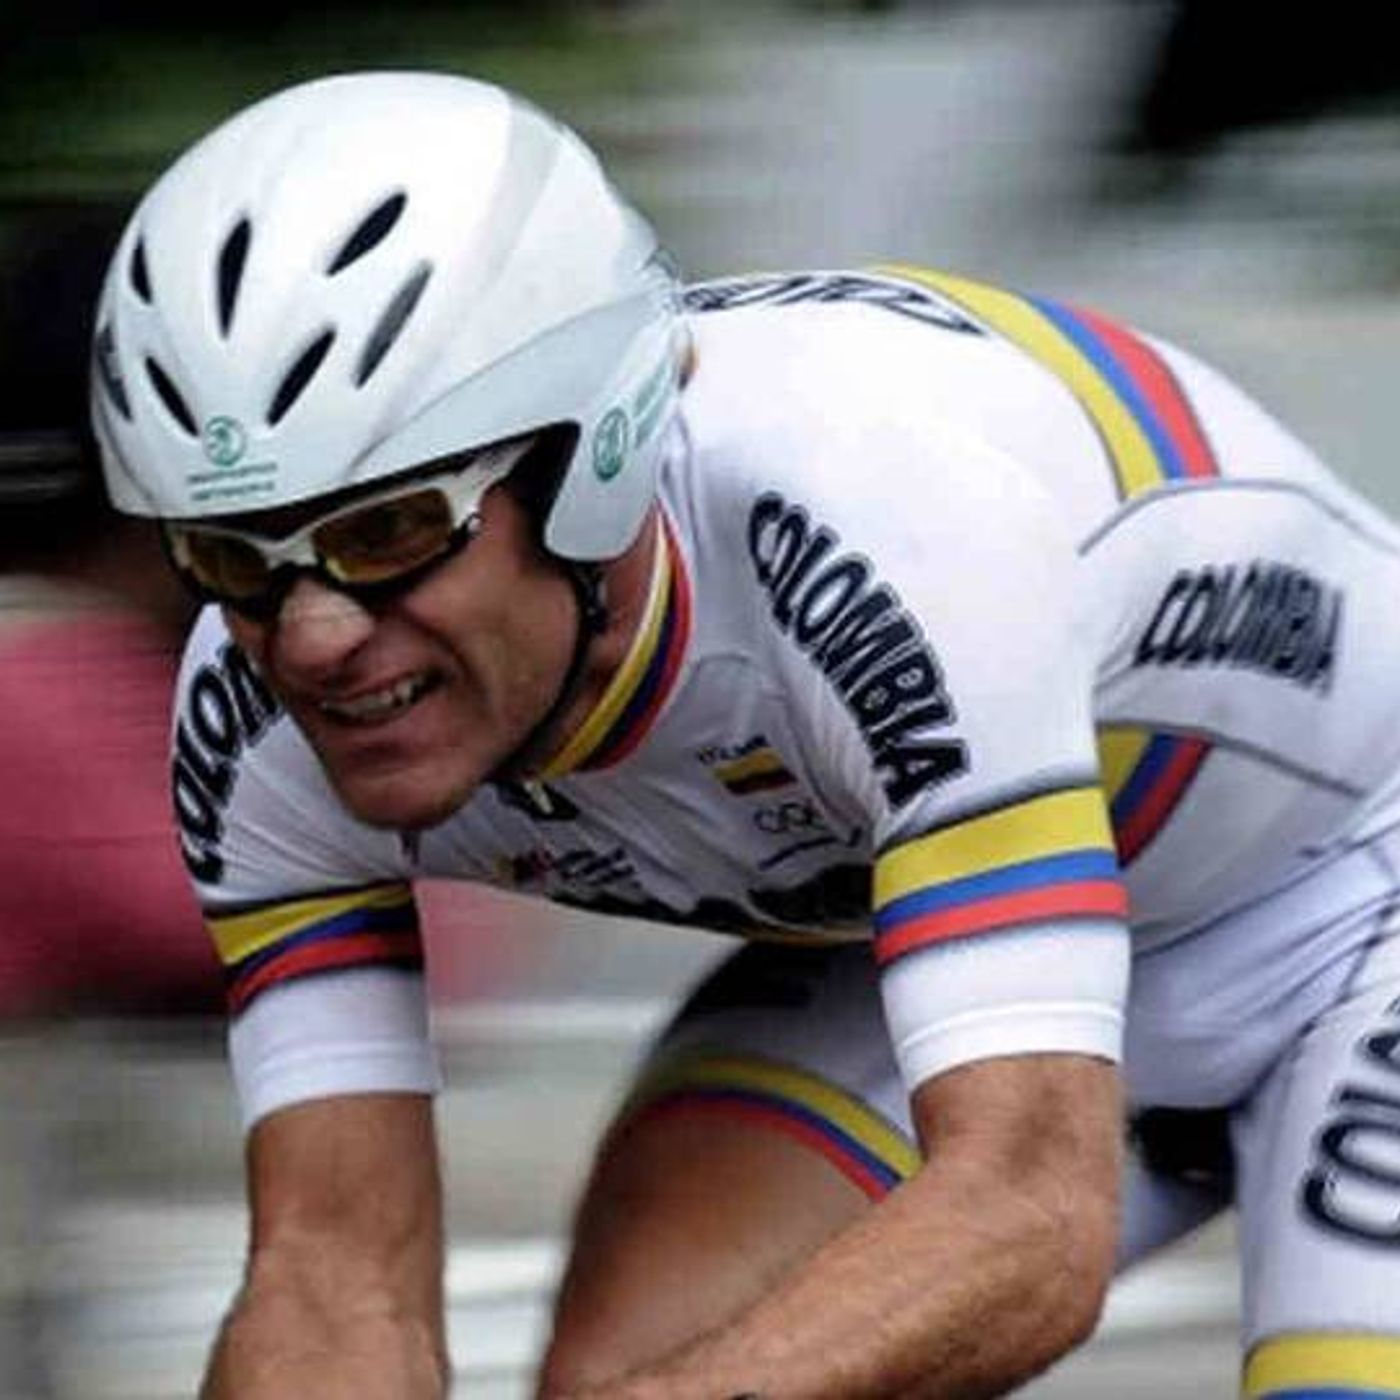 Estos son los favoritos de Santiago Botero en el Giro de Italia